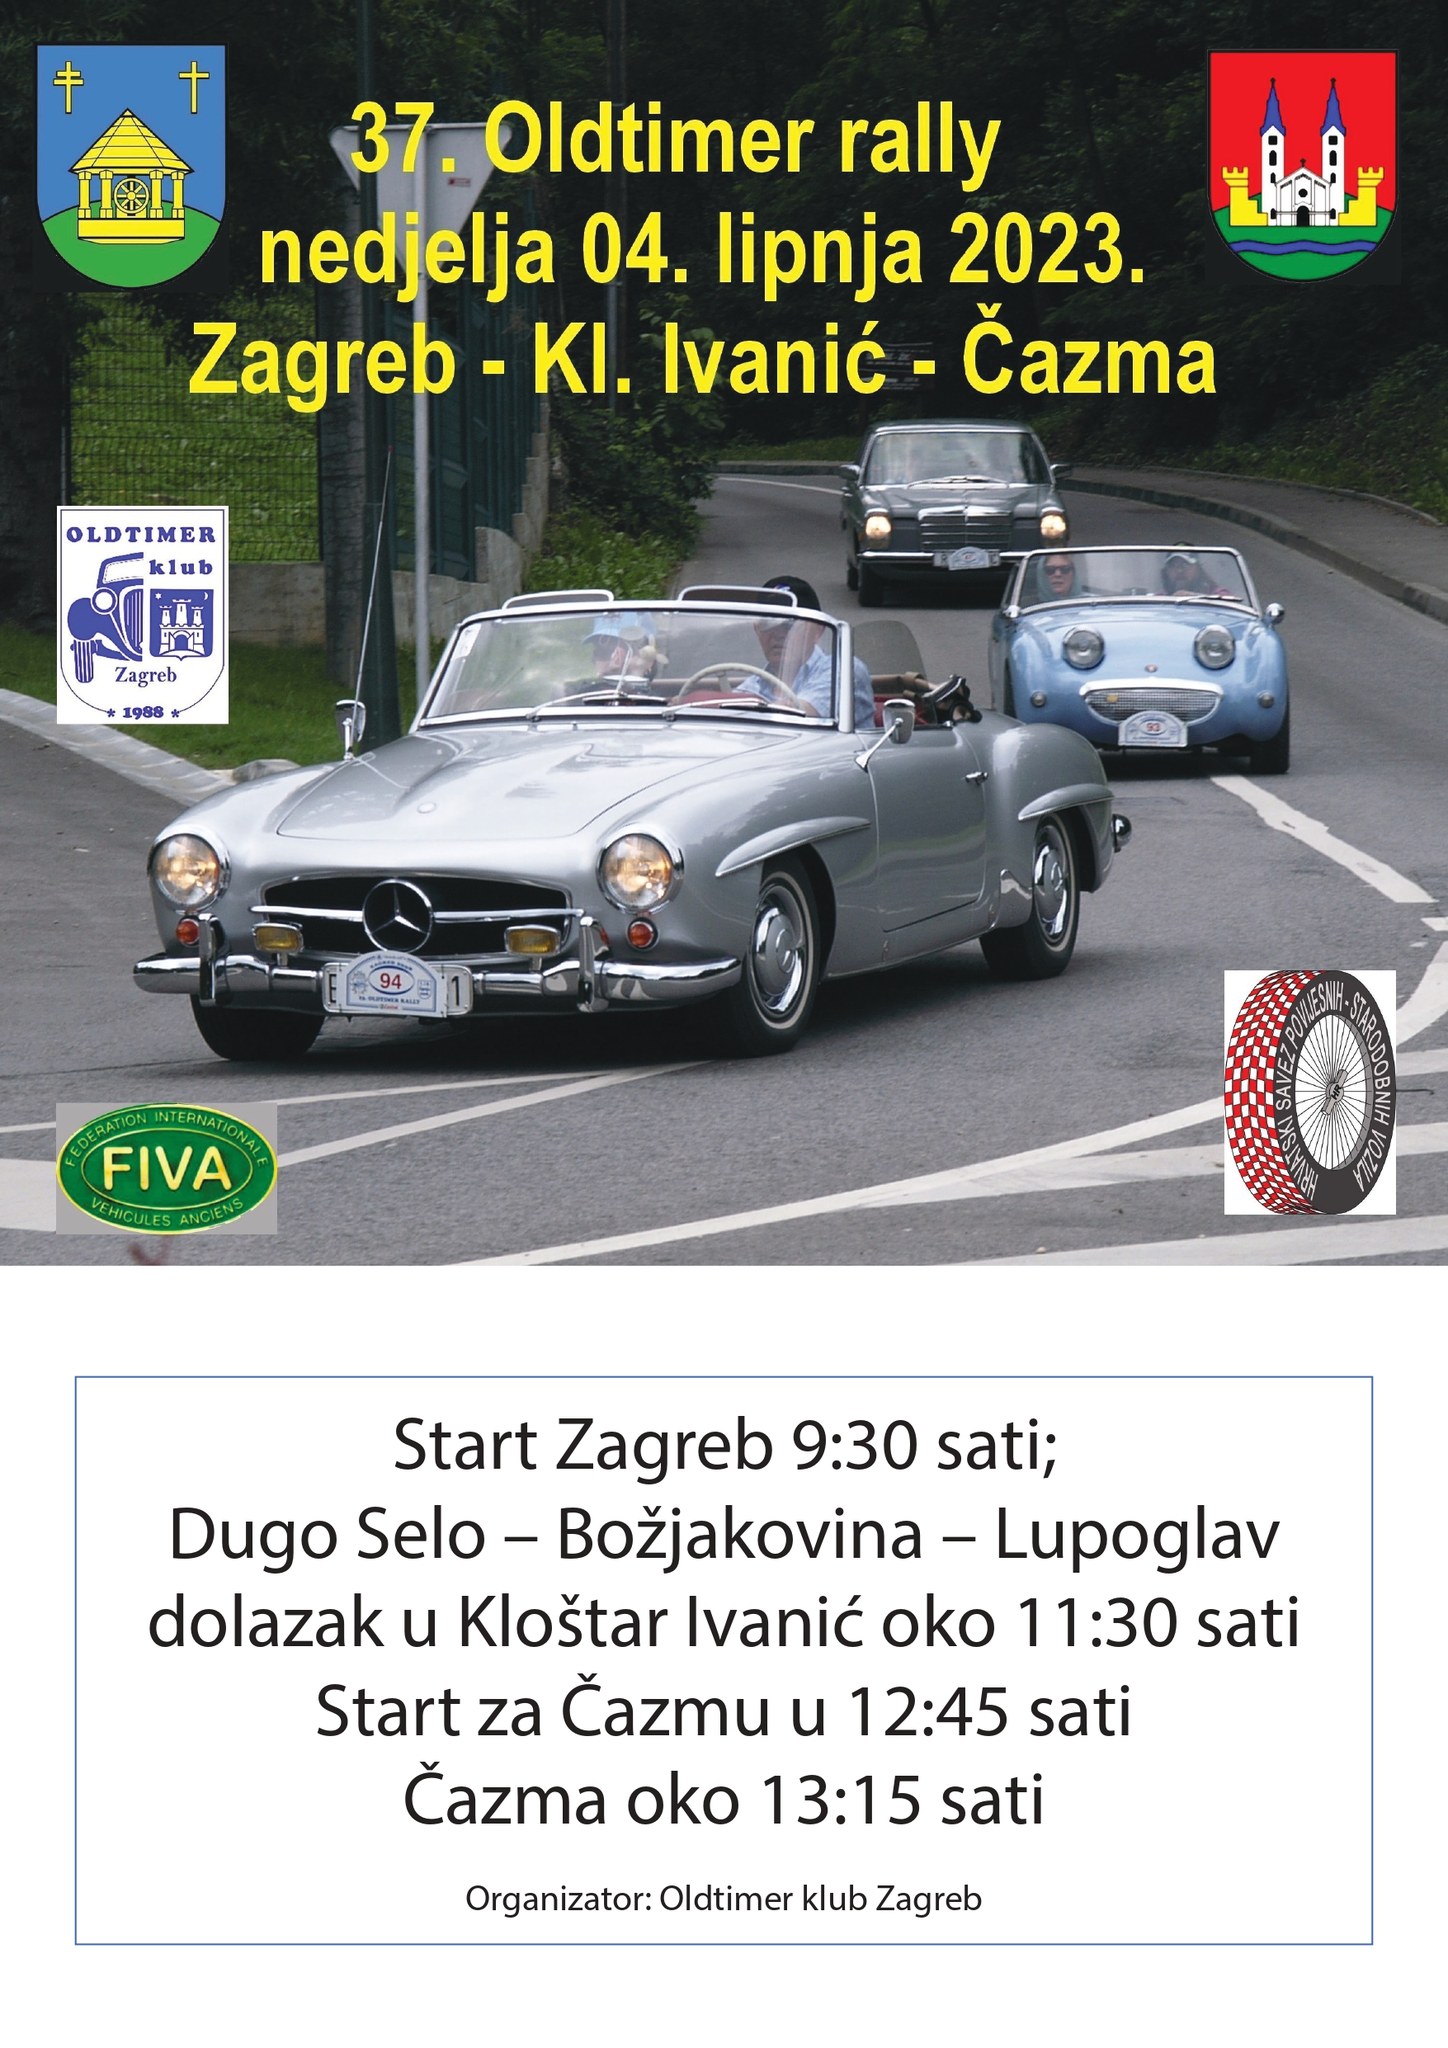 Oldtimer rally Zagreb - Čazma